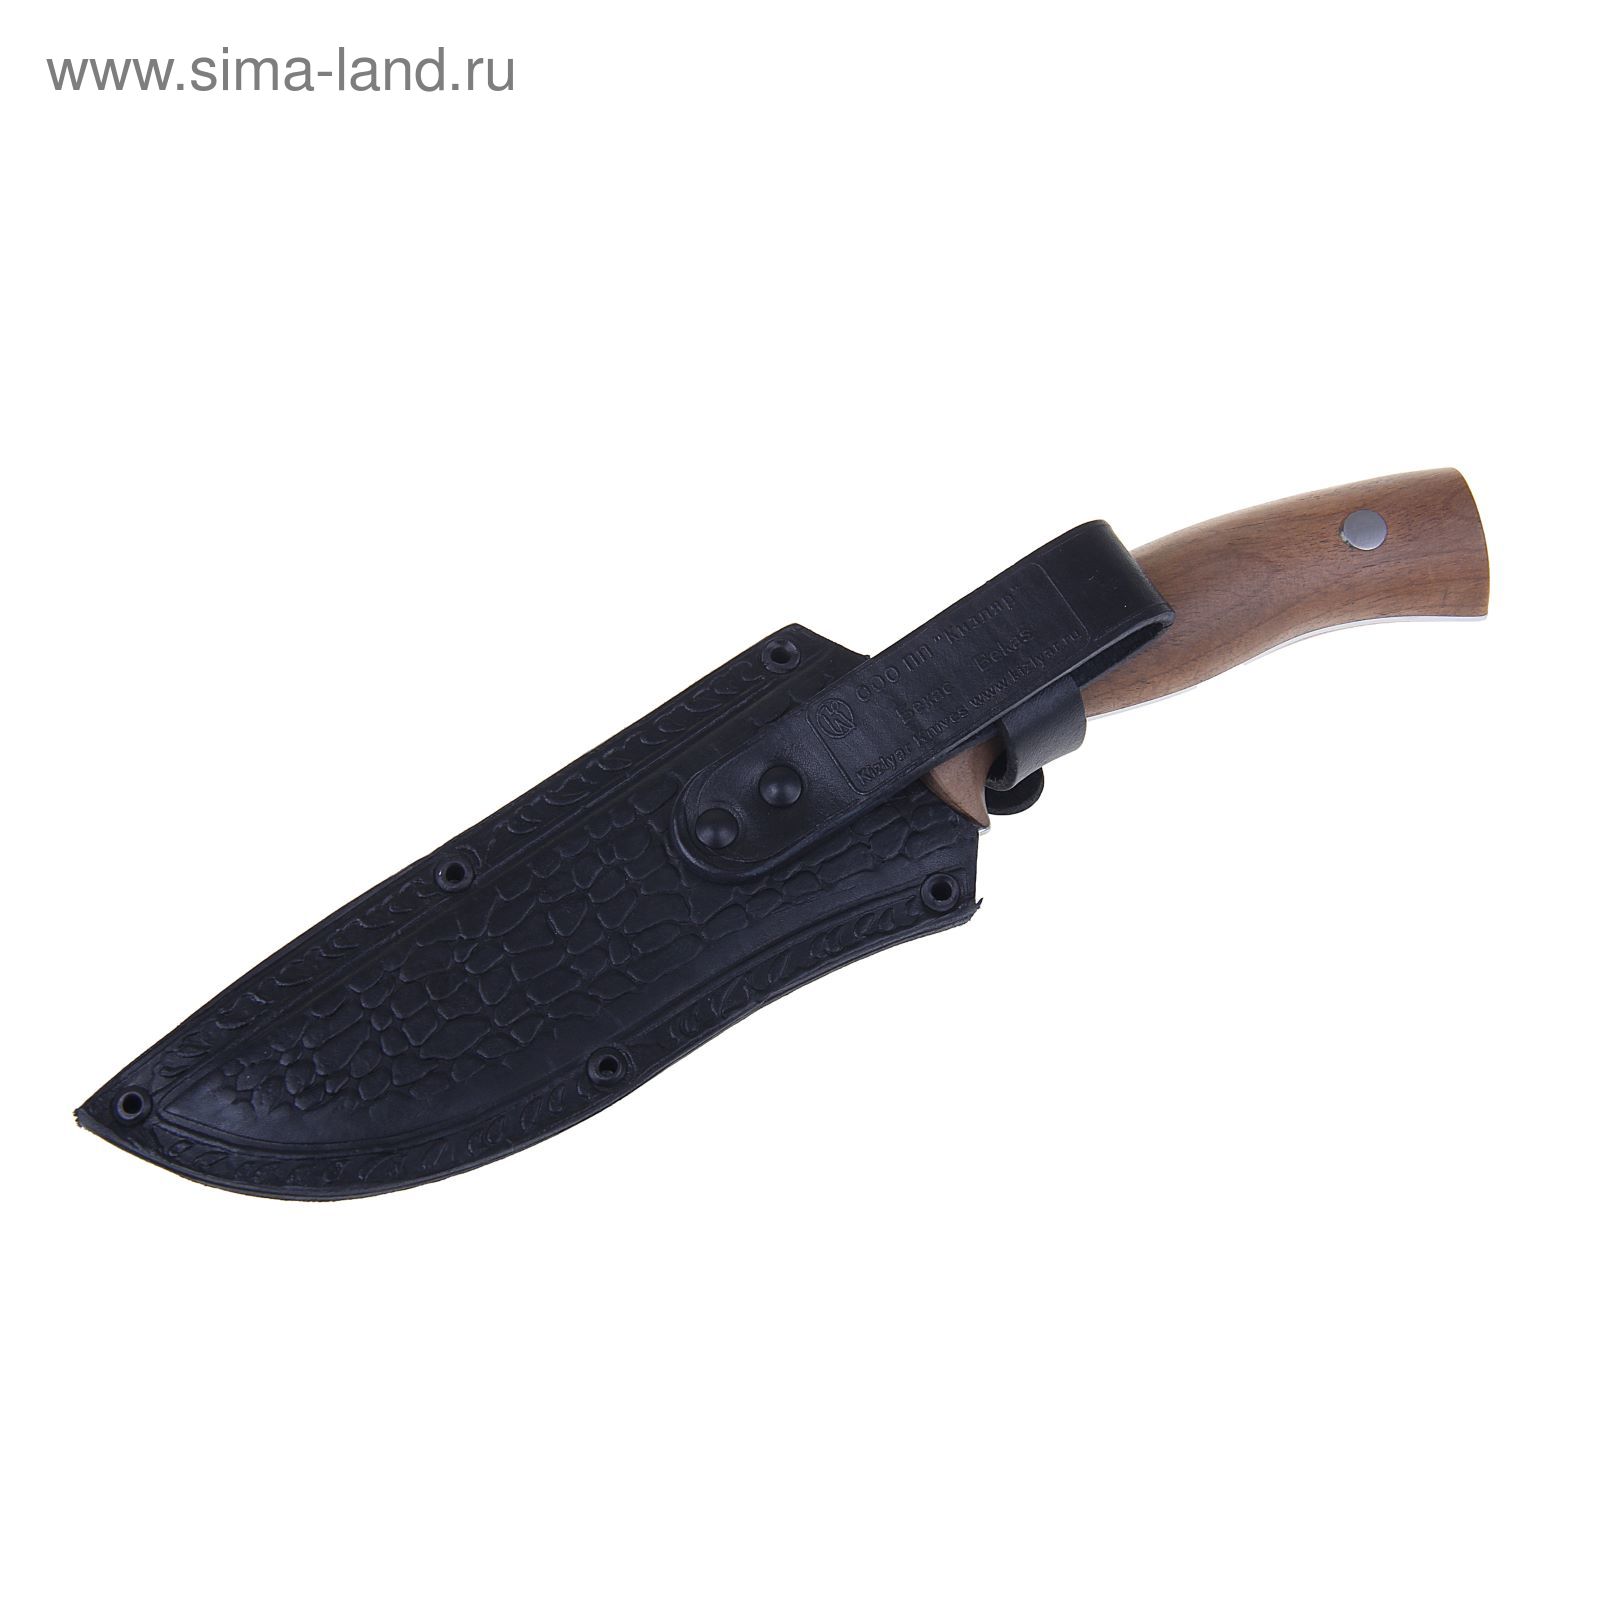 Нож туристический "Бекас-2" - 50931, сталь AUS8, г. Кизляр